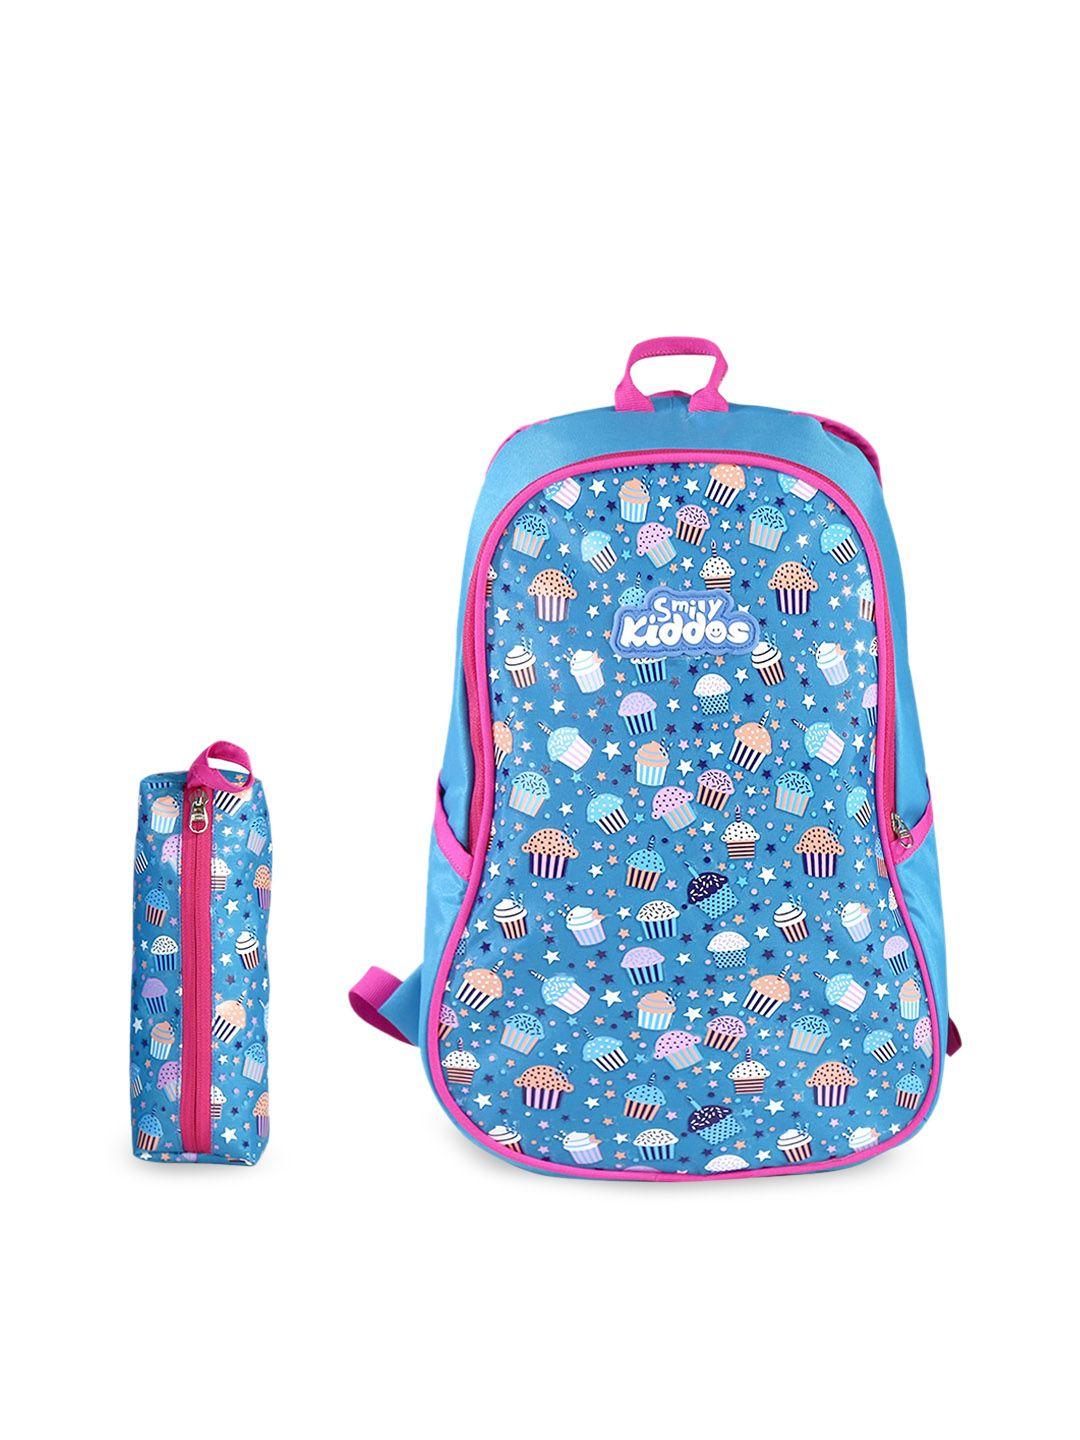 smily kiddos unisex kids blue backpacks